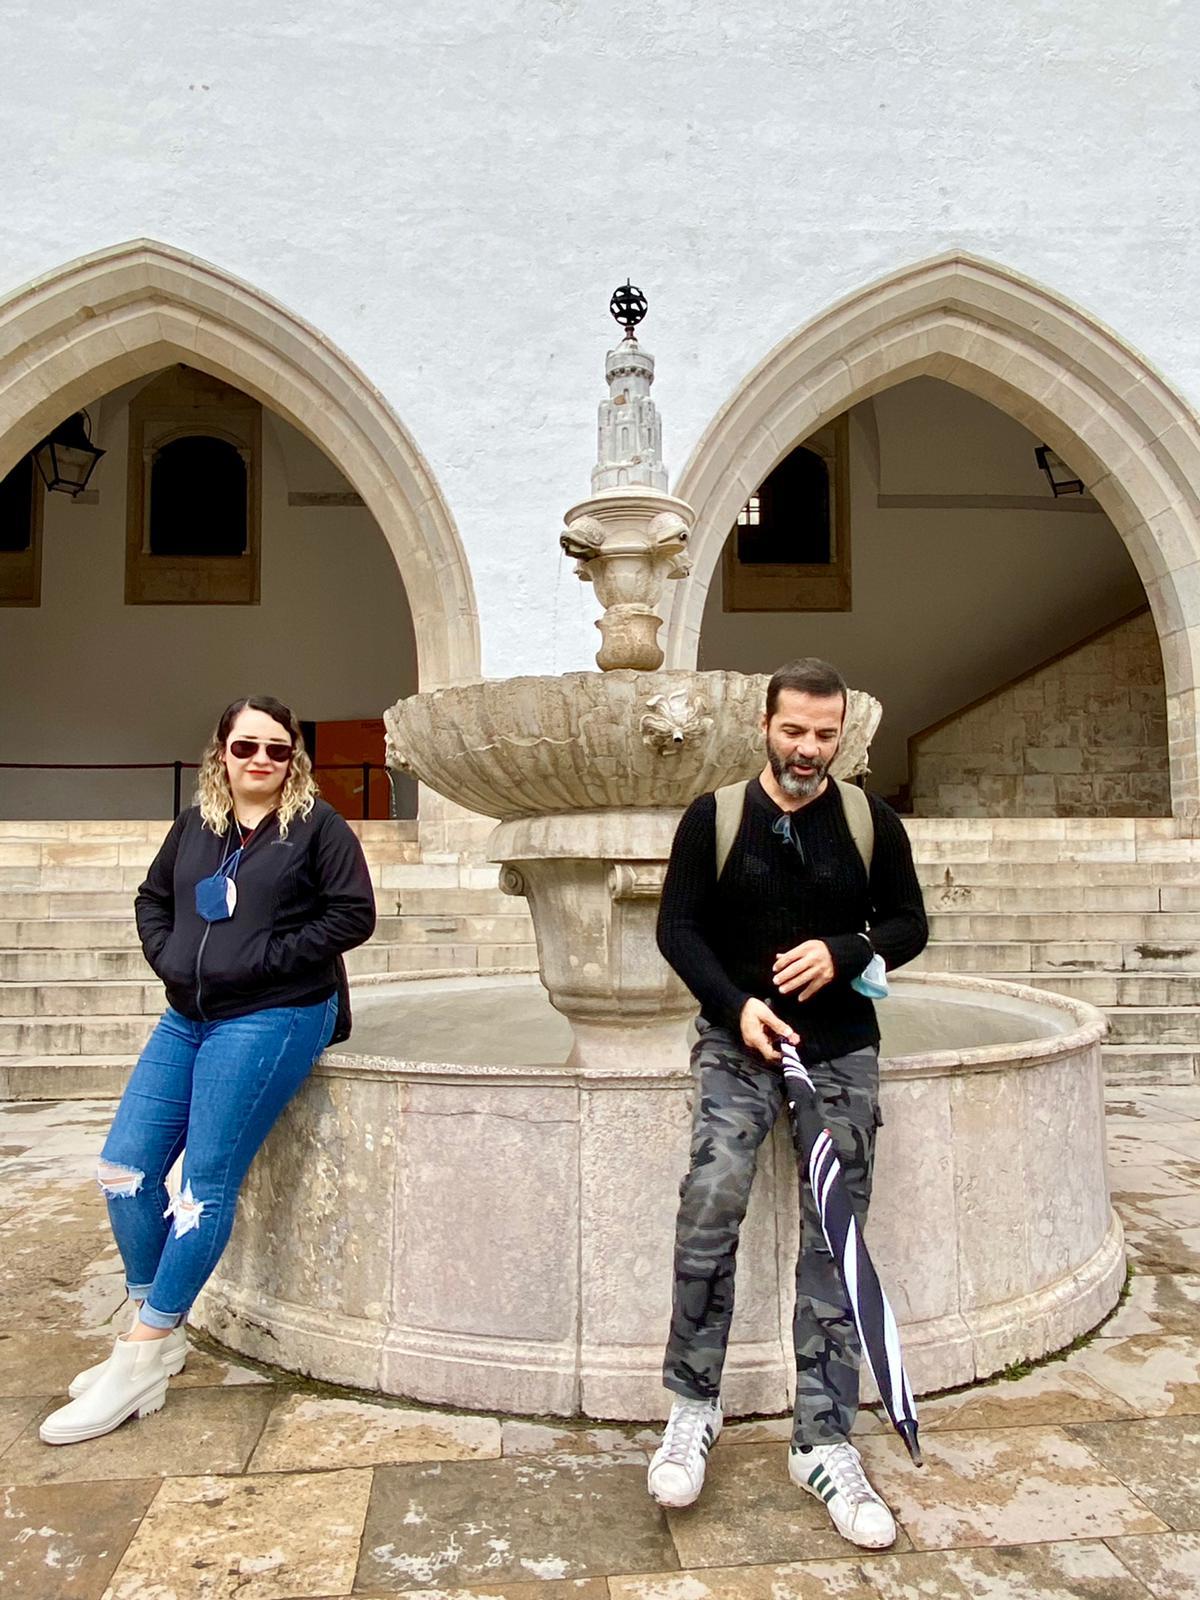 Medieval-Sintra-Free-Walking-tour-16